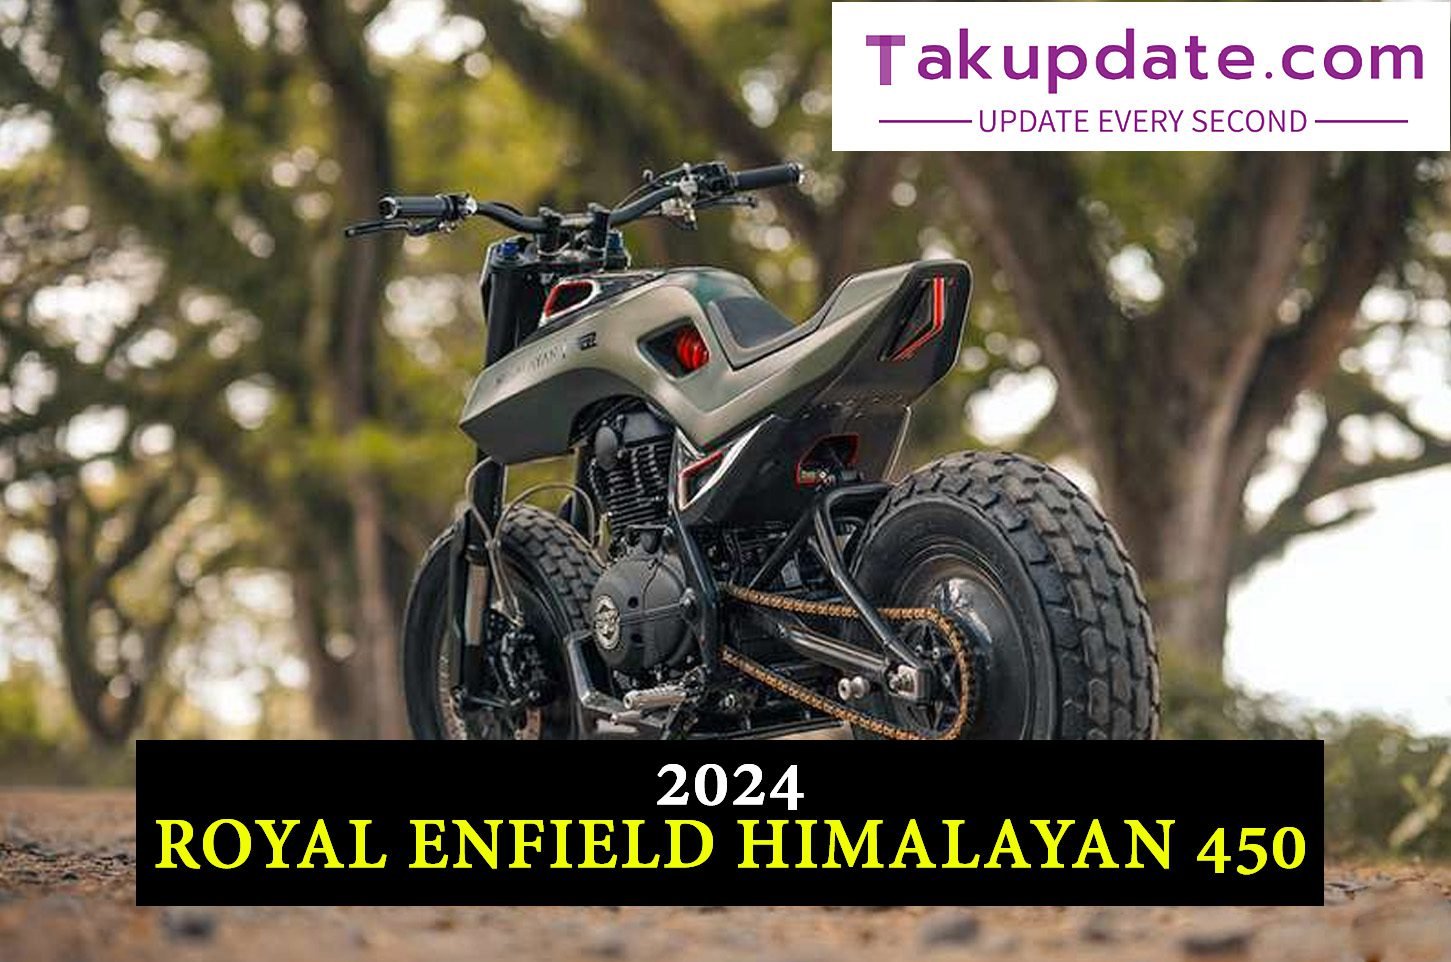 Royal Enfield Himalayan 450 review